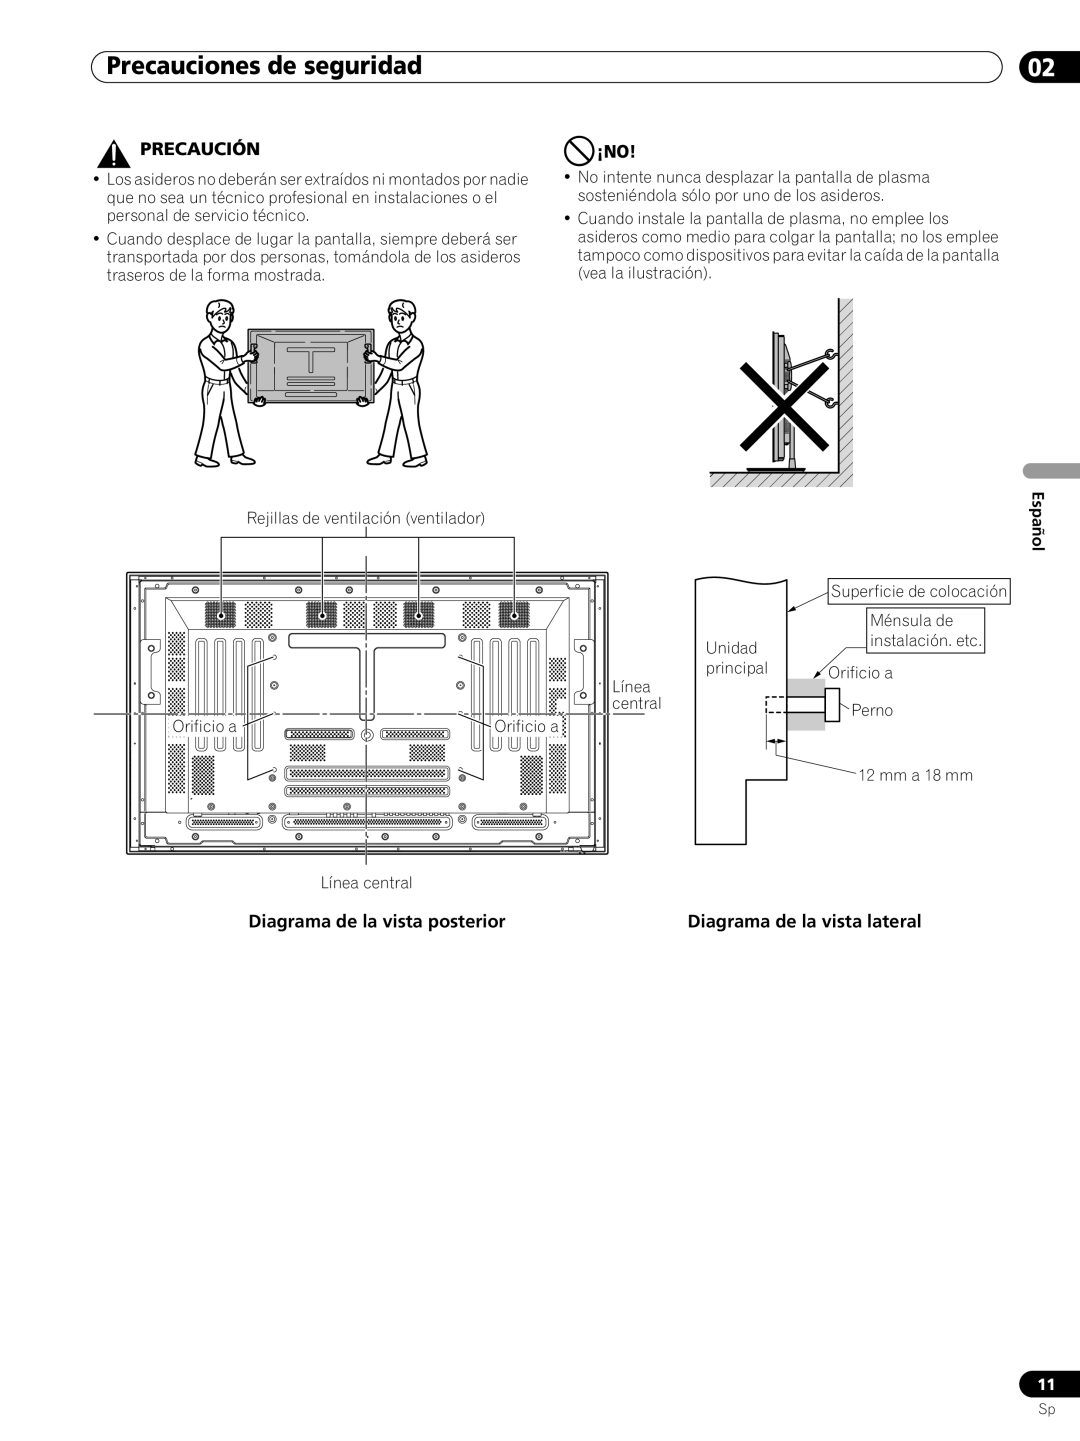 Pioneer PRO-FHD1 operating instructions Precauciones de seguridad, Precaución, Diagrama de la vista posterior, Español 